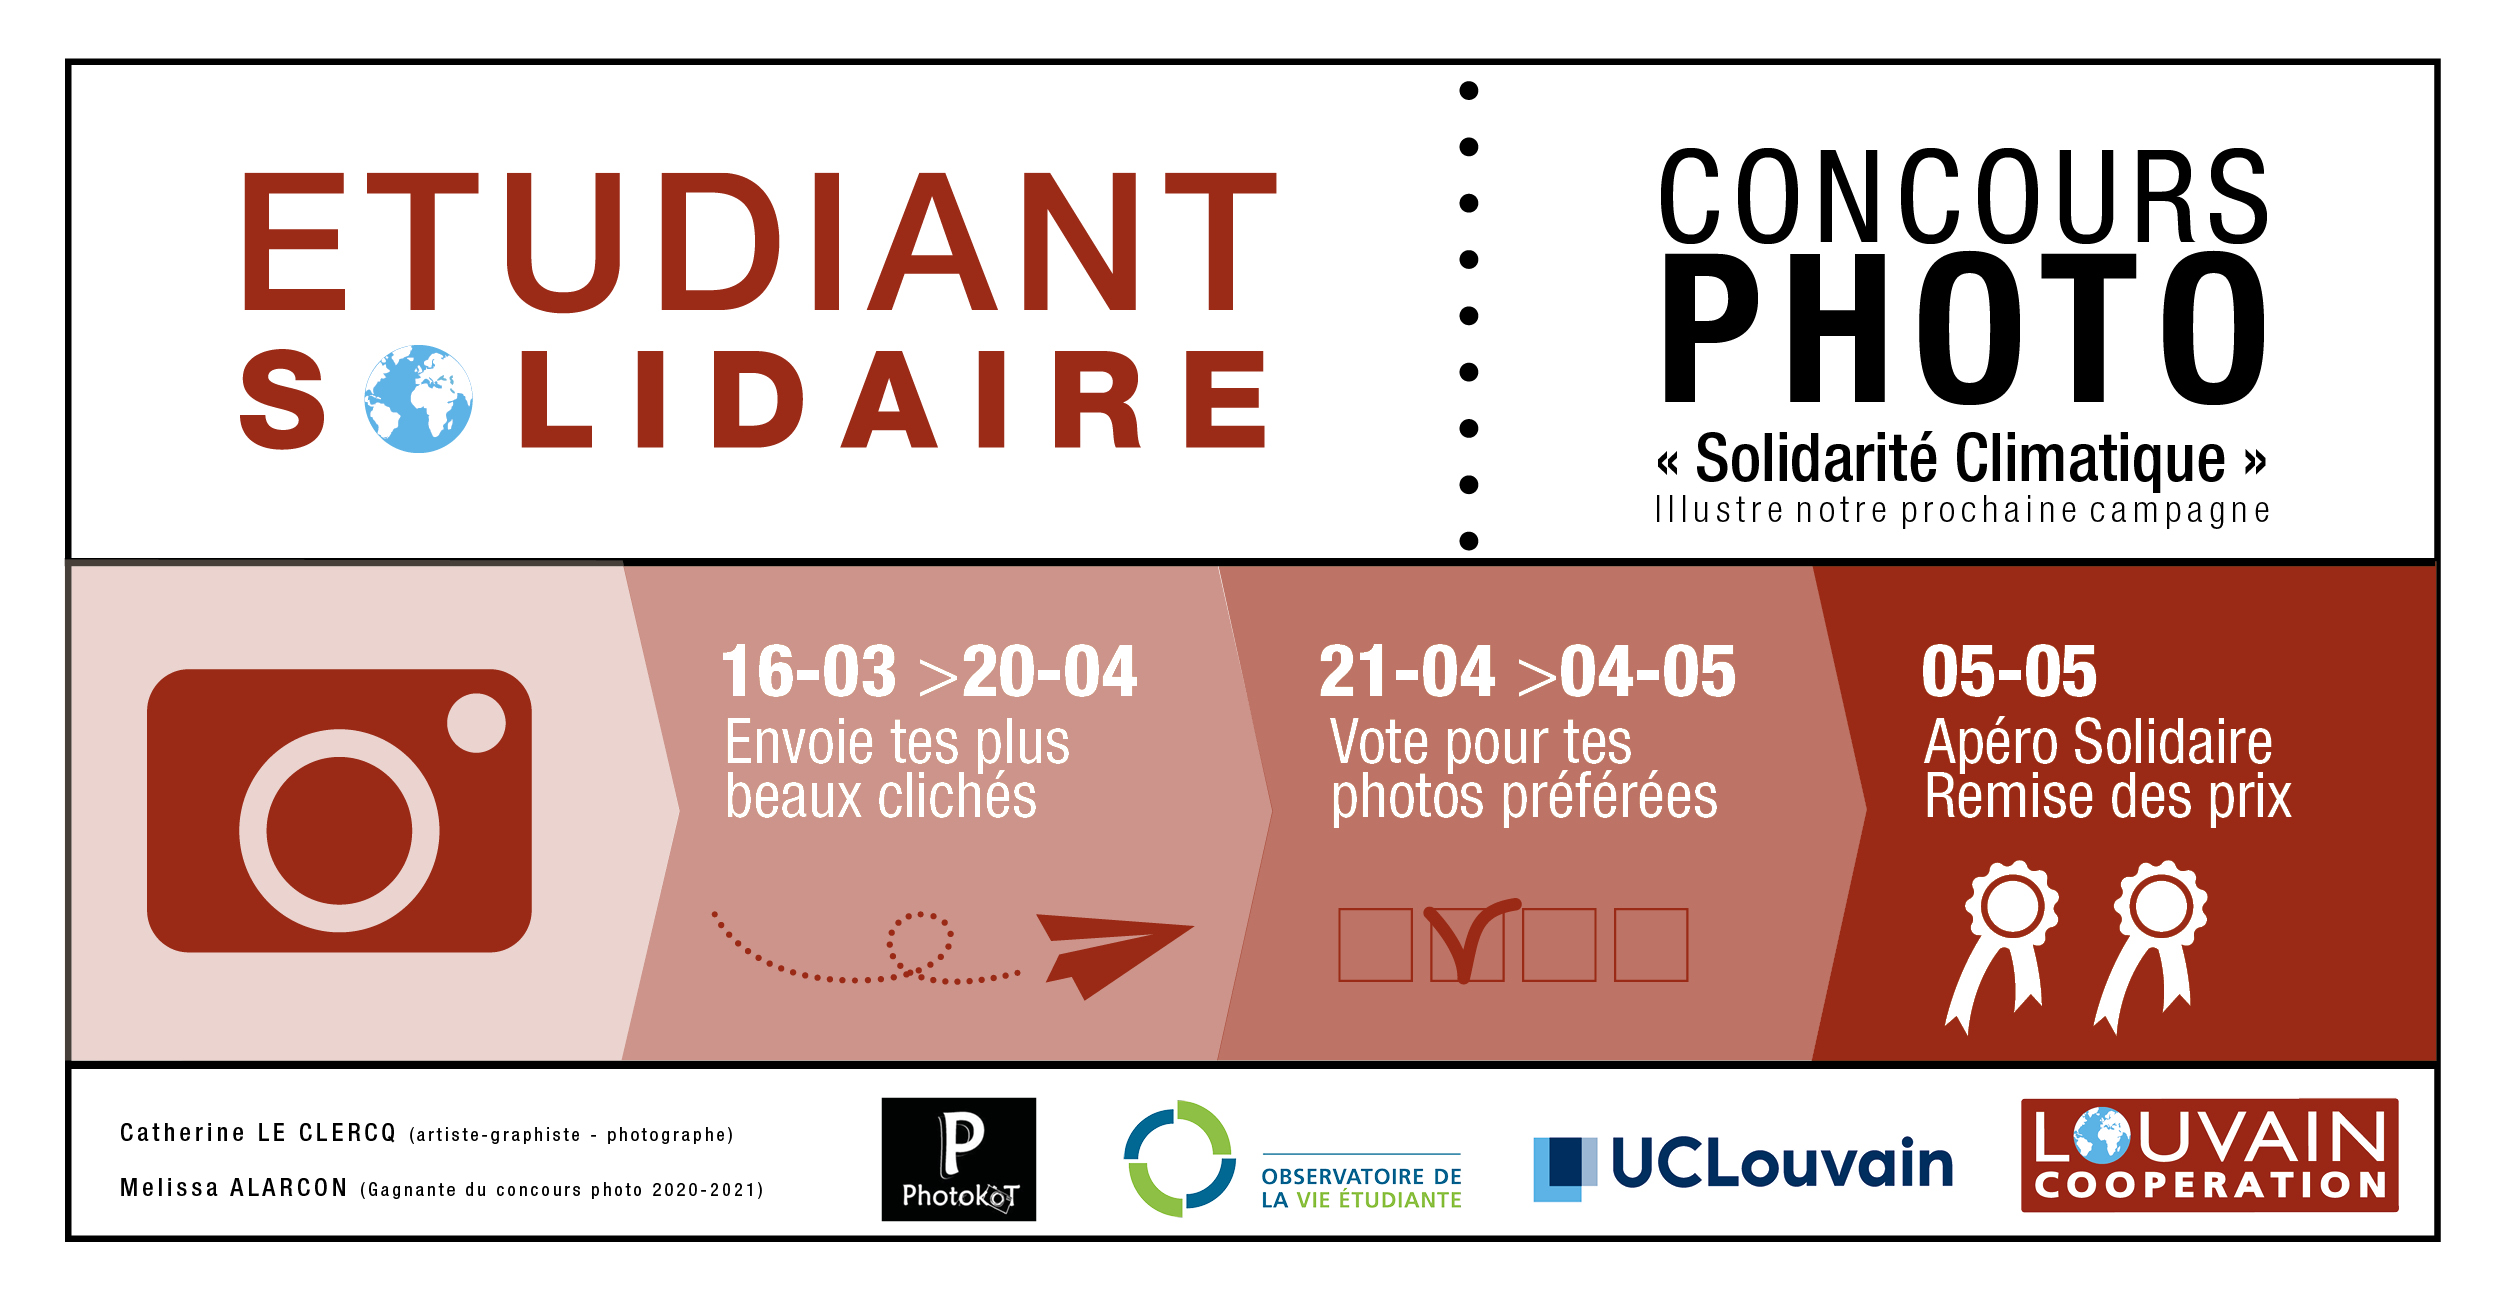 Concours photo: Etudiant Solidaire